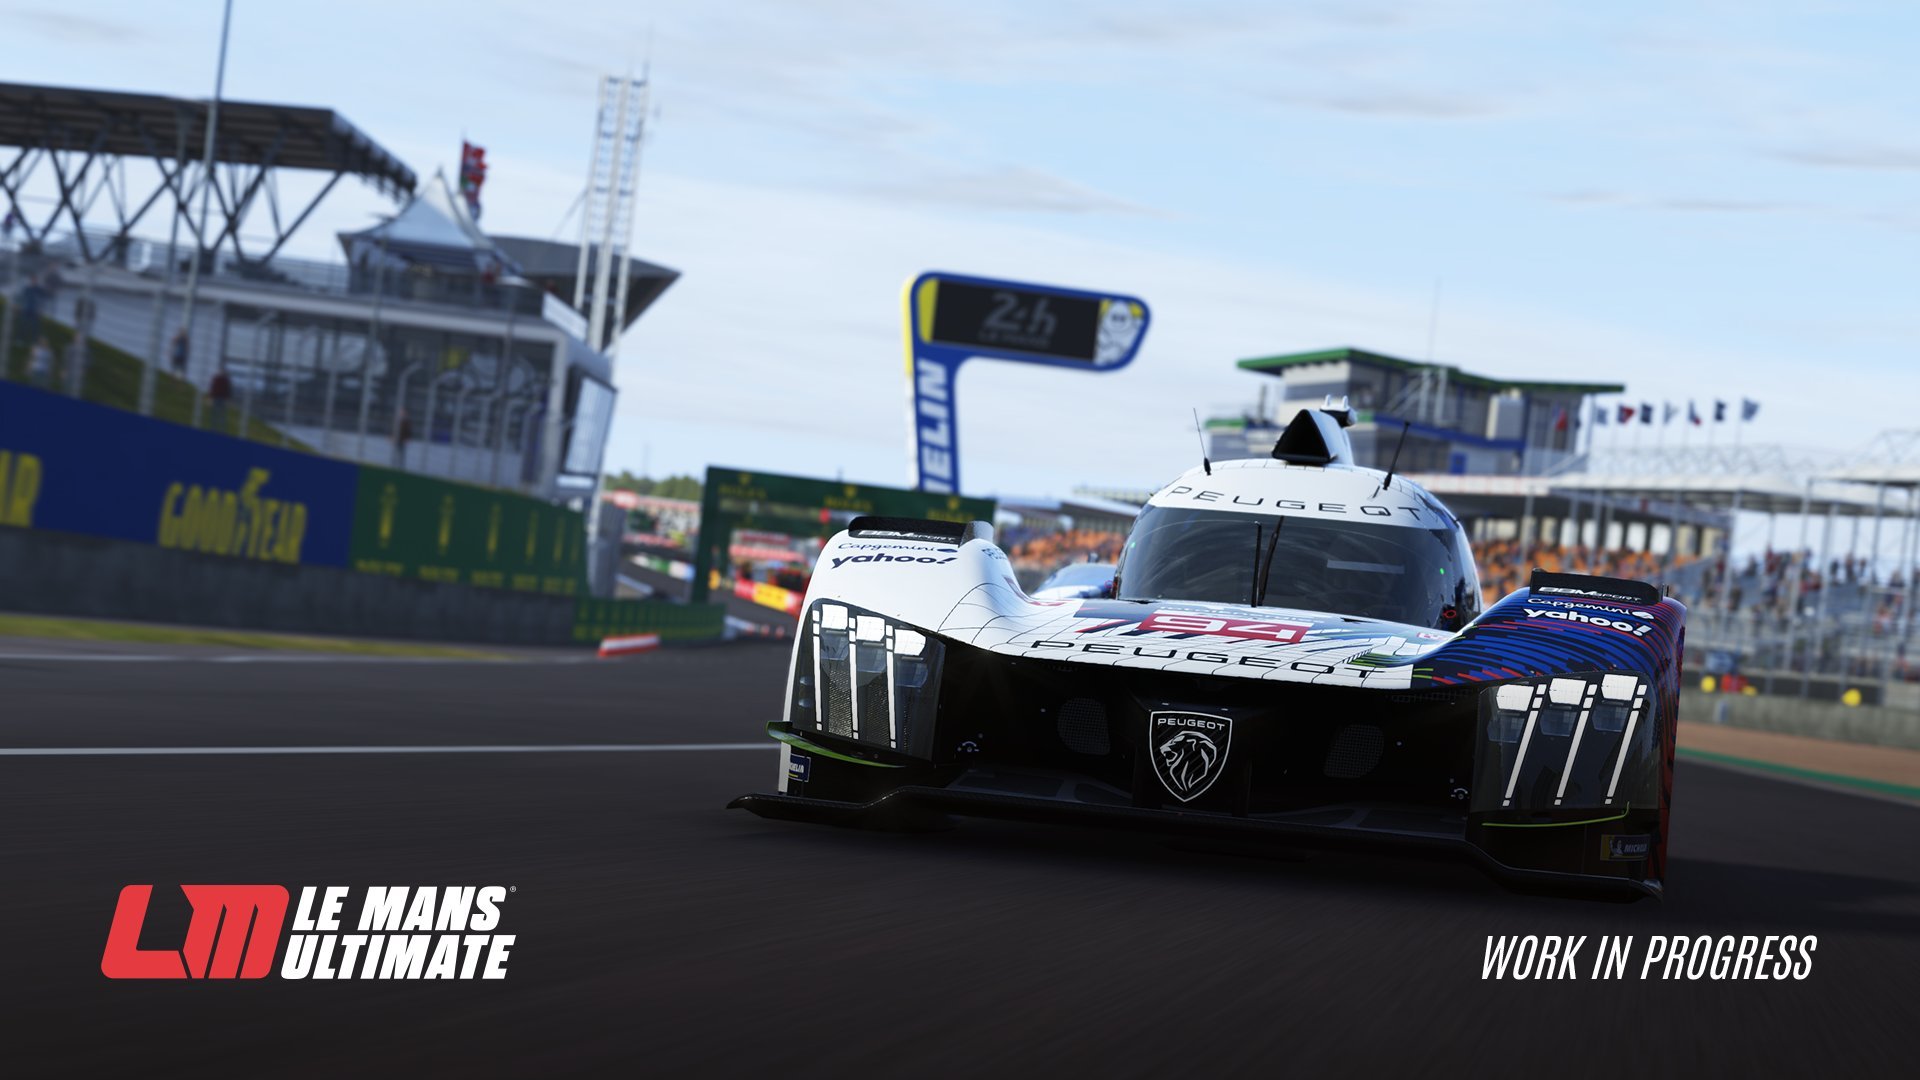 More information about "Ottima partenza di vendite per Le Mans Ultimate, si pensa alla Le Mans Virtual Series"